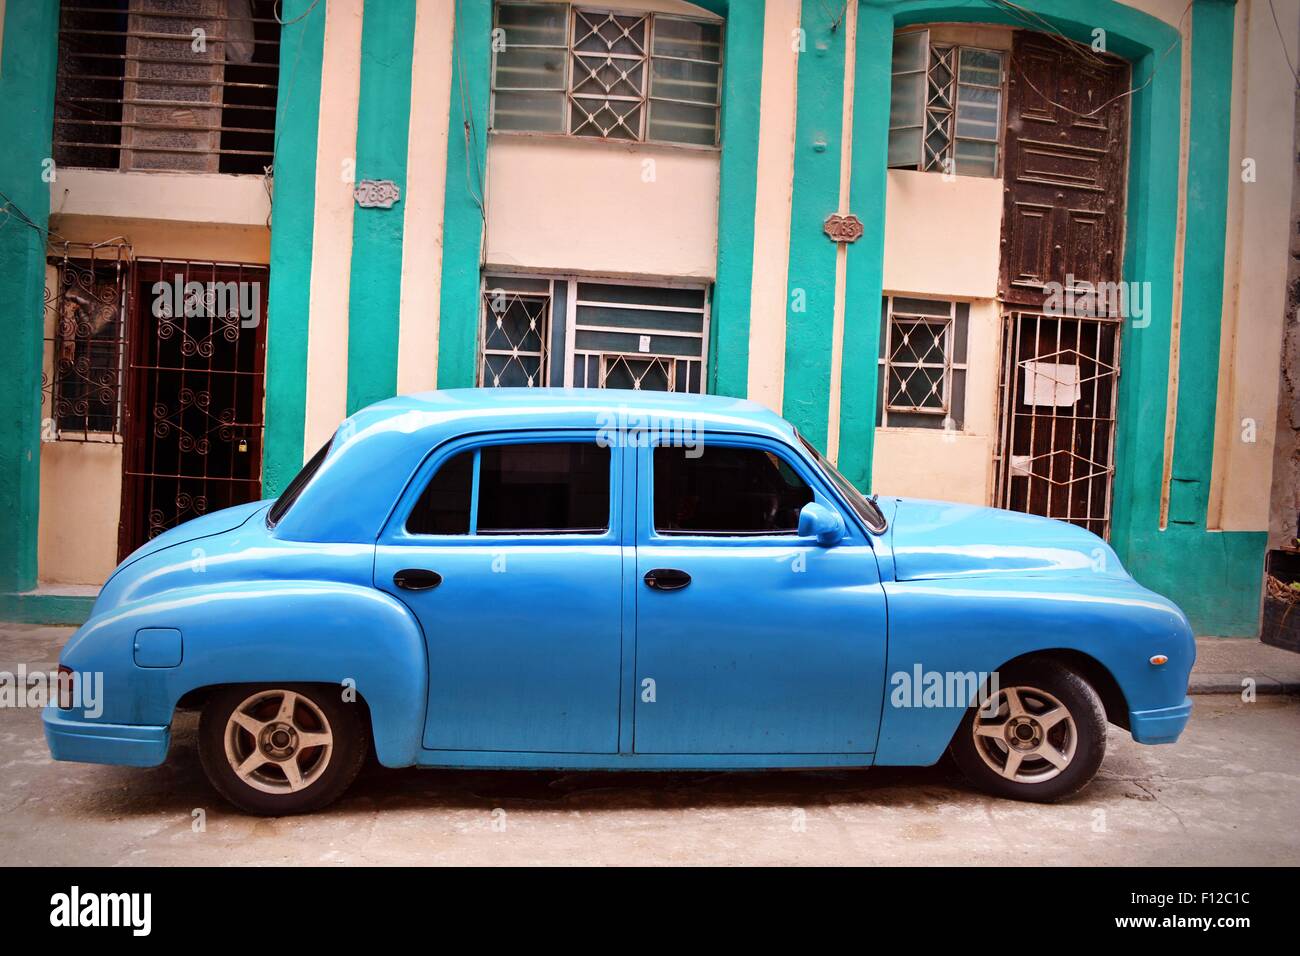 Turchese brillante lucido, auto con vetri colorati, parcheggiata in una strada residenziale a l'Avana, Cuba. Foto Stock